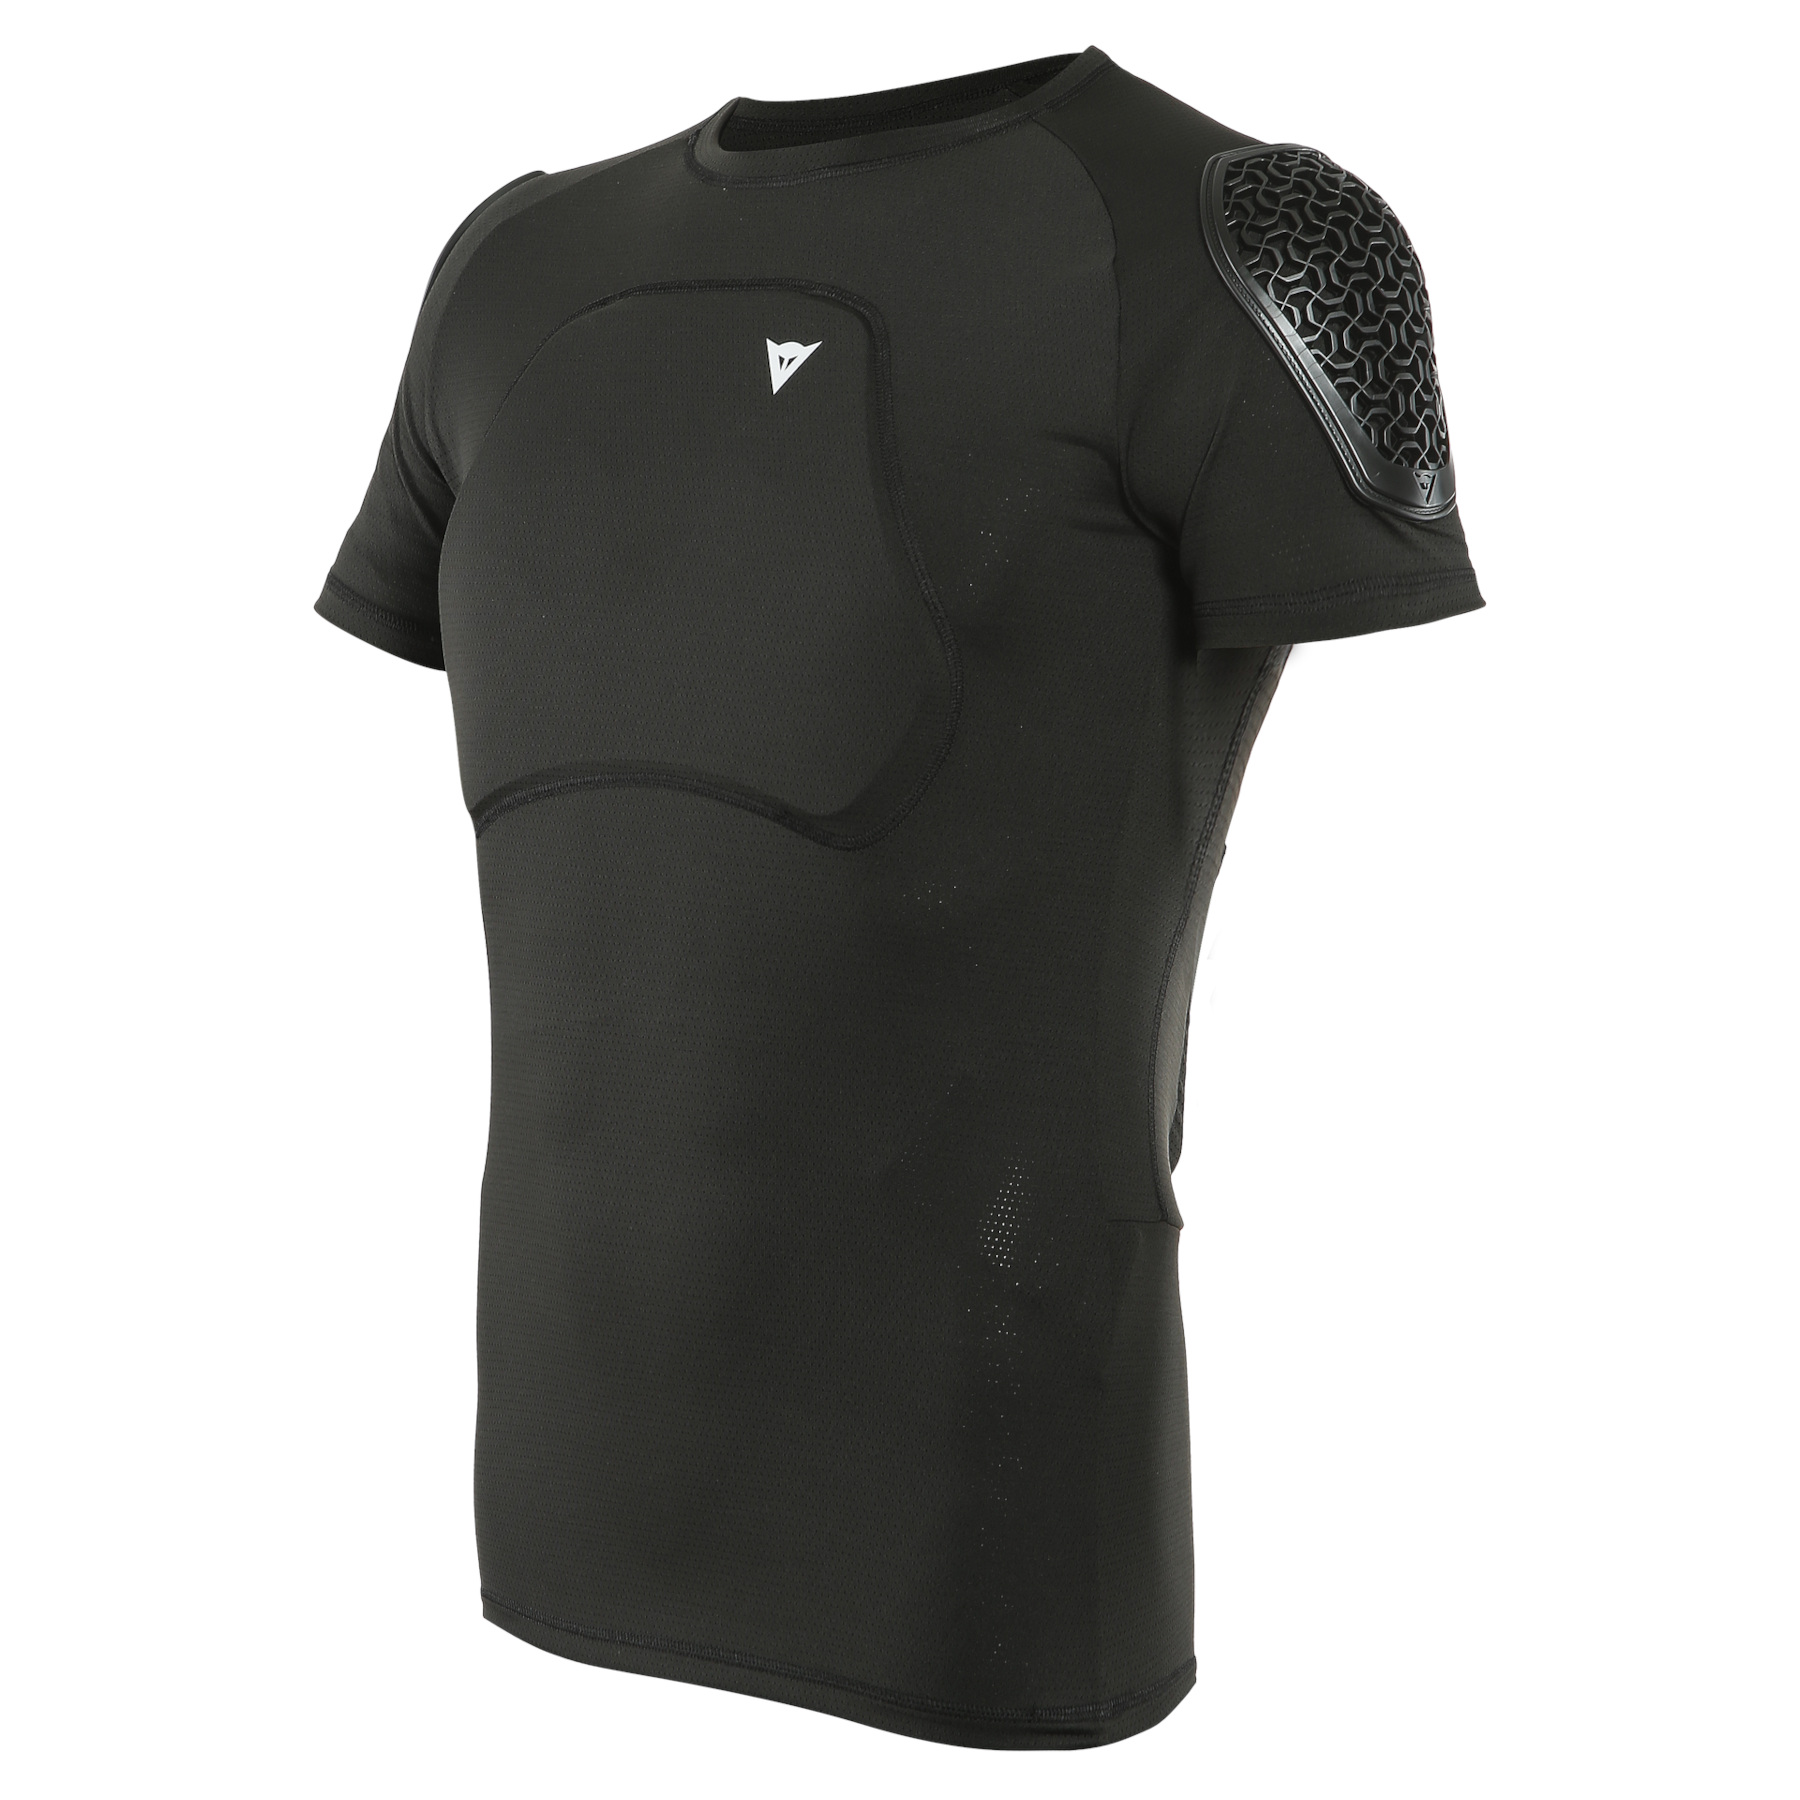 Produktbild von Dainese Trail Skins Pro Protektoren T-Shirt - schwarz